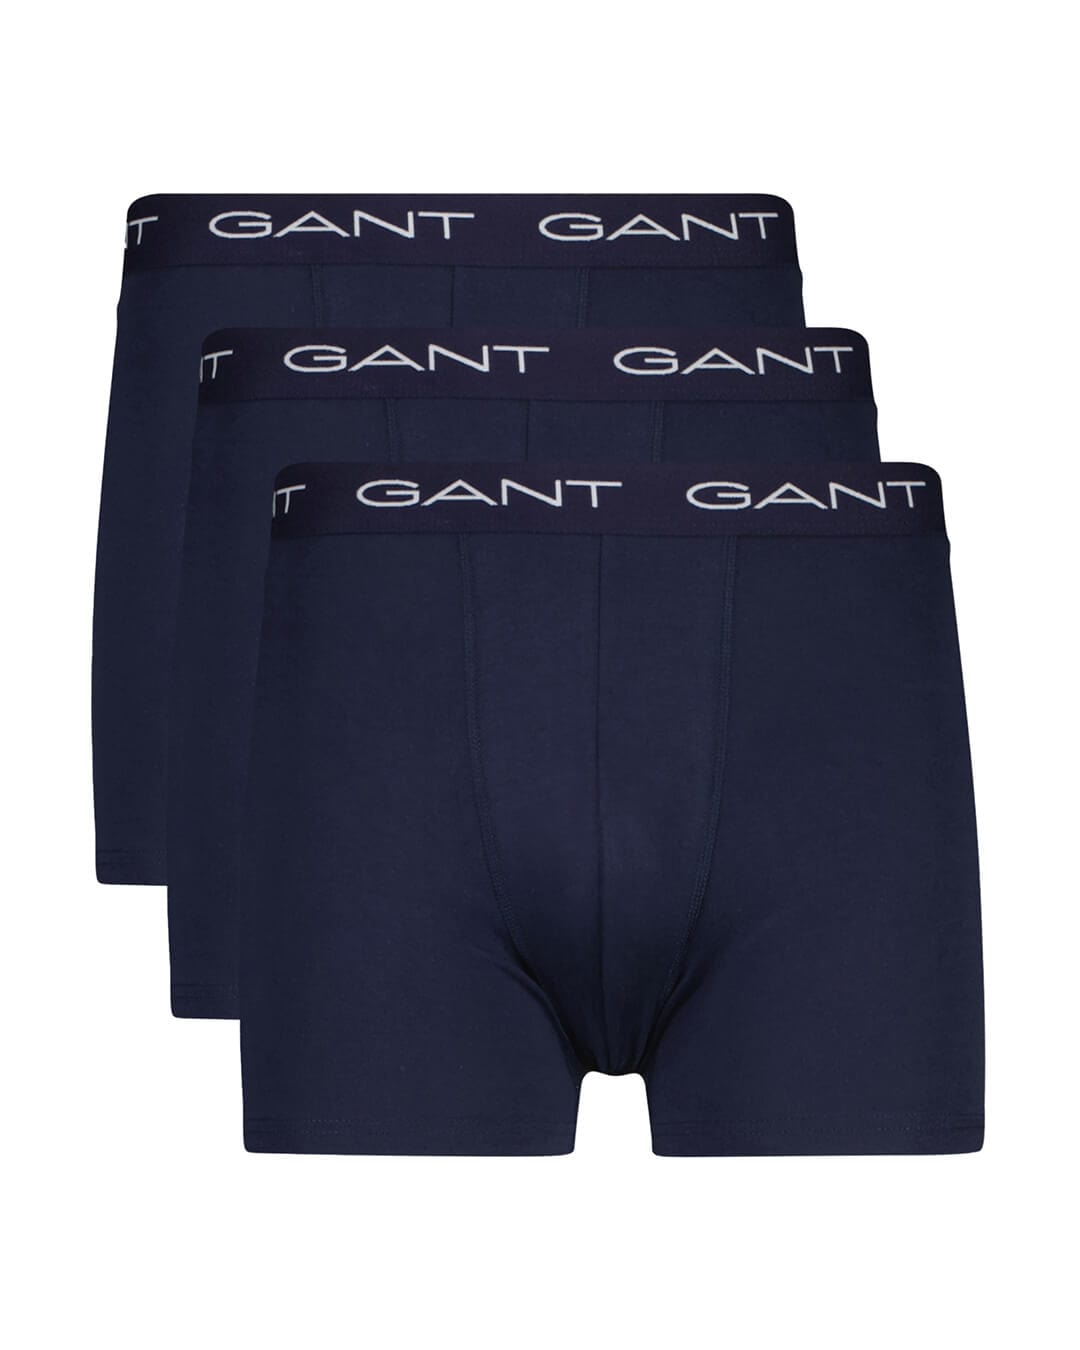 Gant Underwear Gant Marine 3-Pack Boxer Briefs